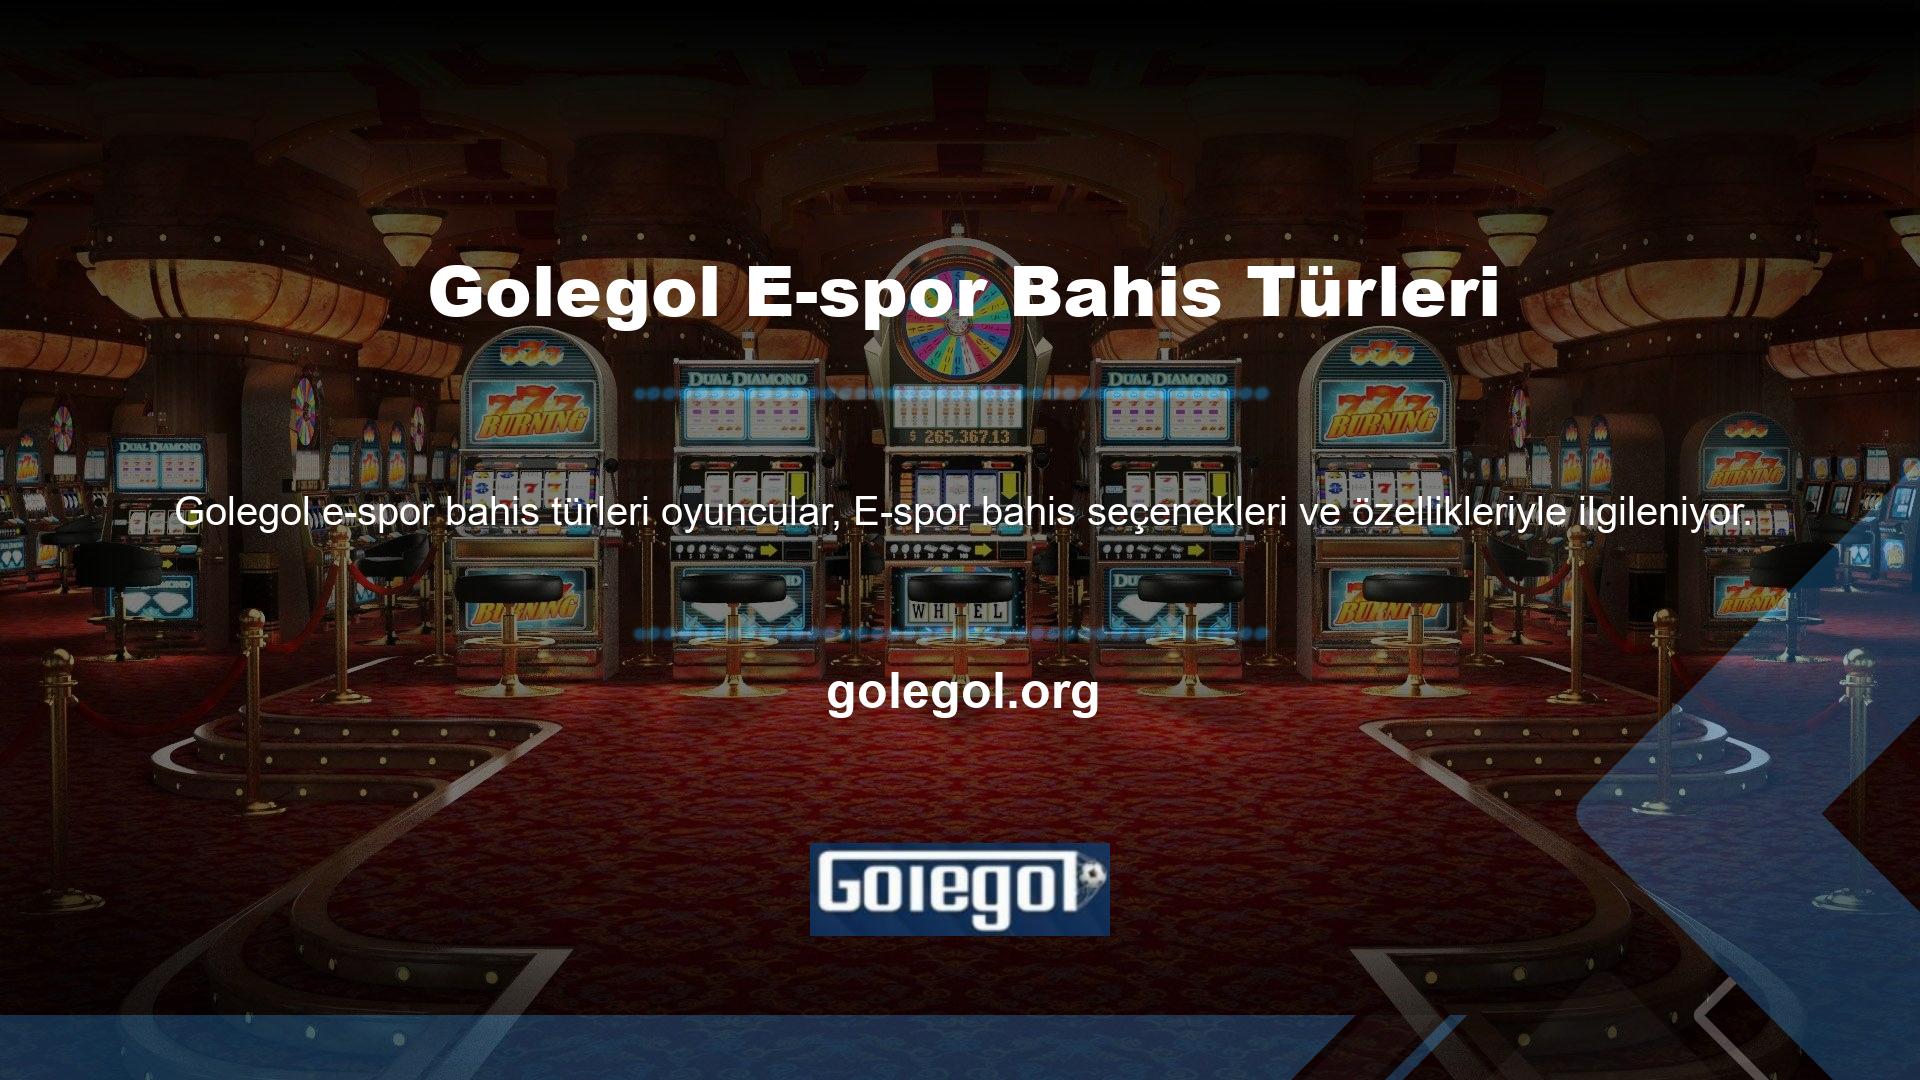 Golegol bahis sitesi E-spor bahis seçenekleriyle üyelerini memnun ediyor